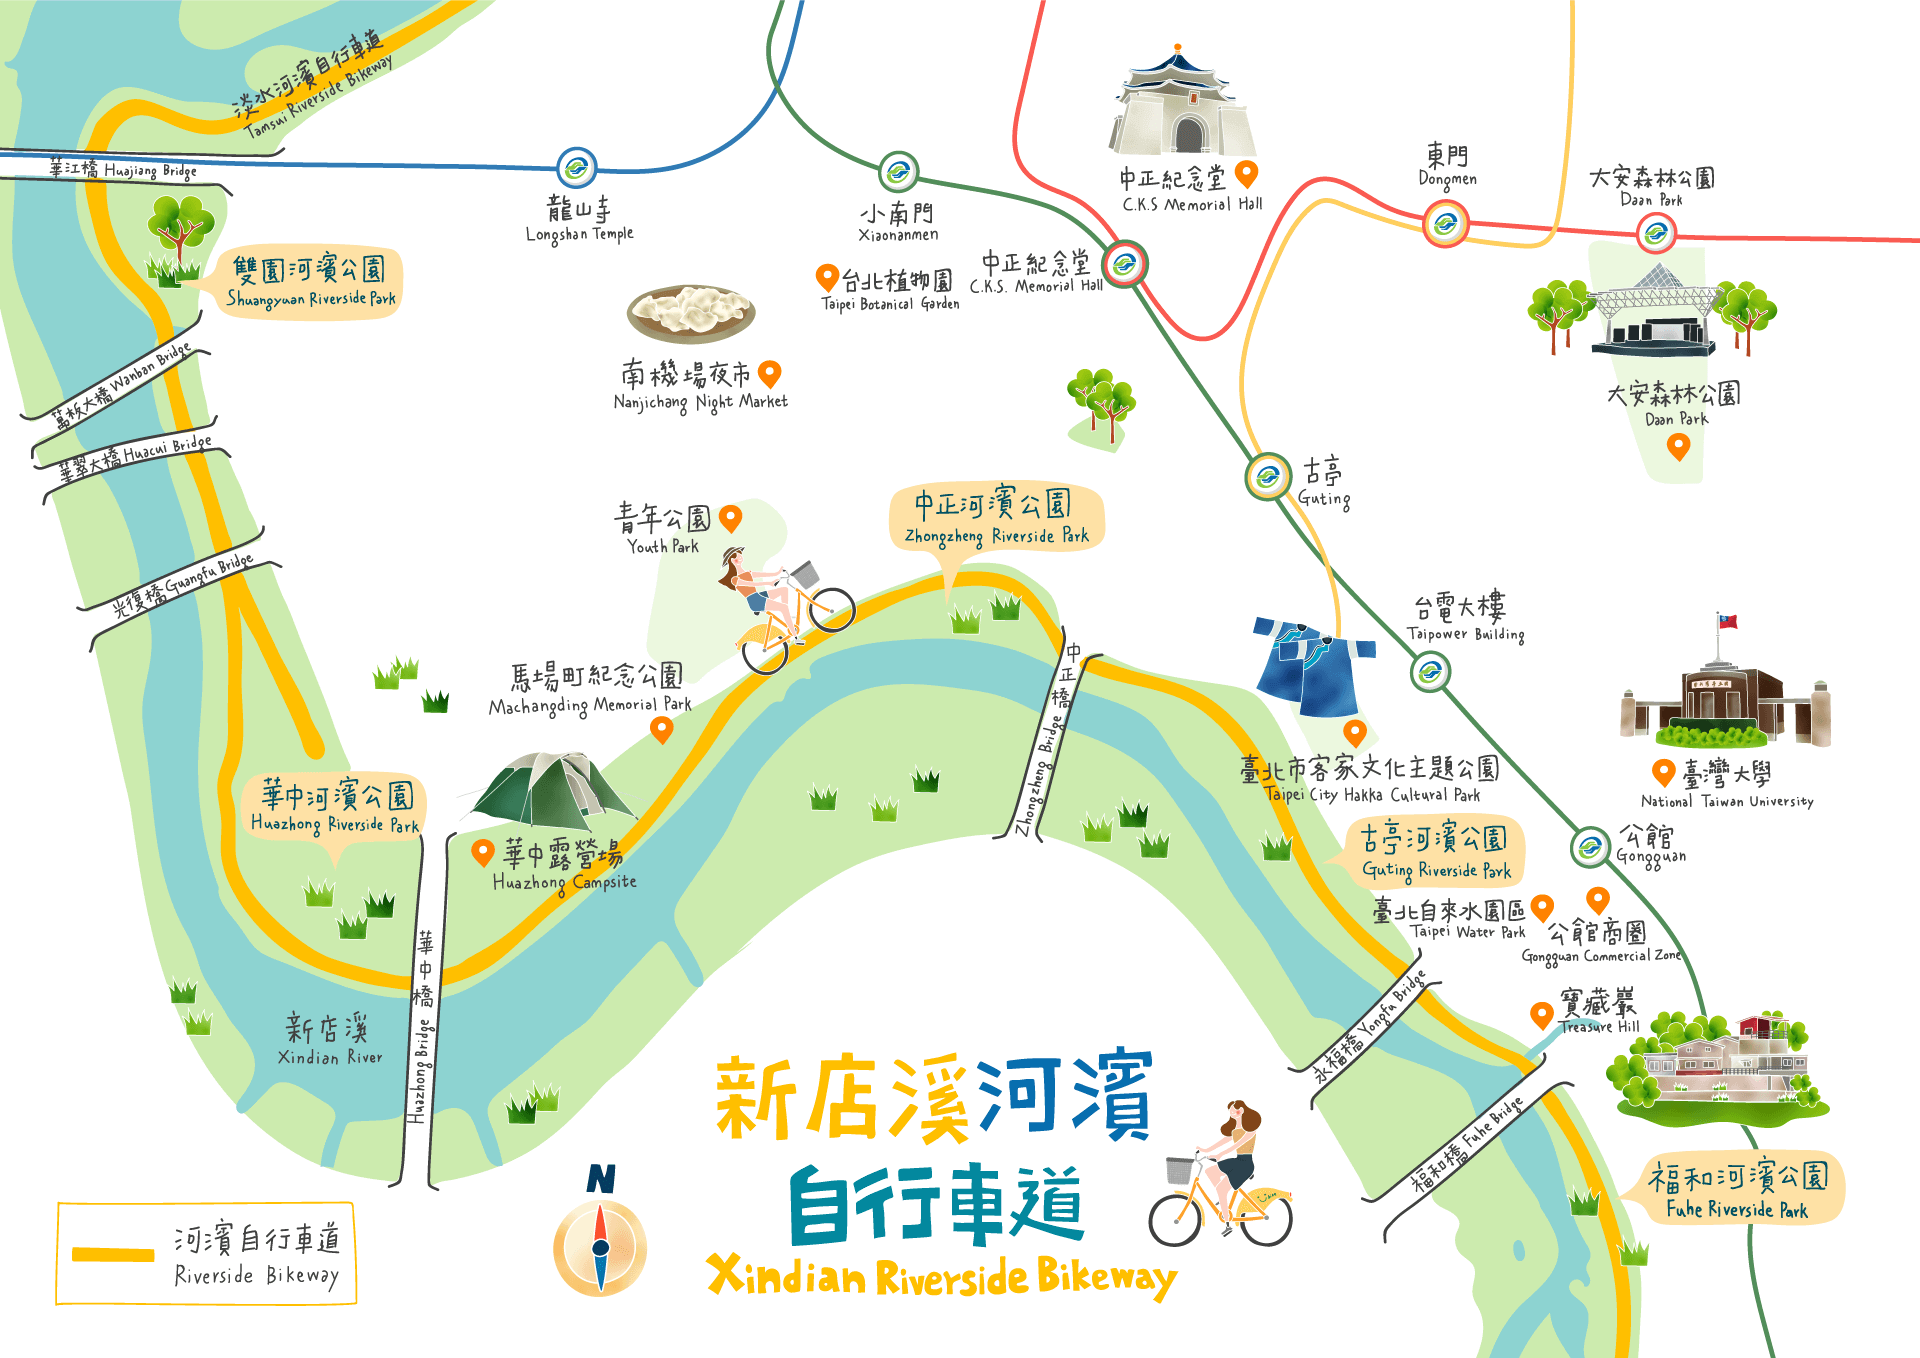 臺北河濱單車輕旅行 臺北旅遊網